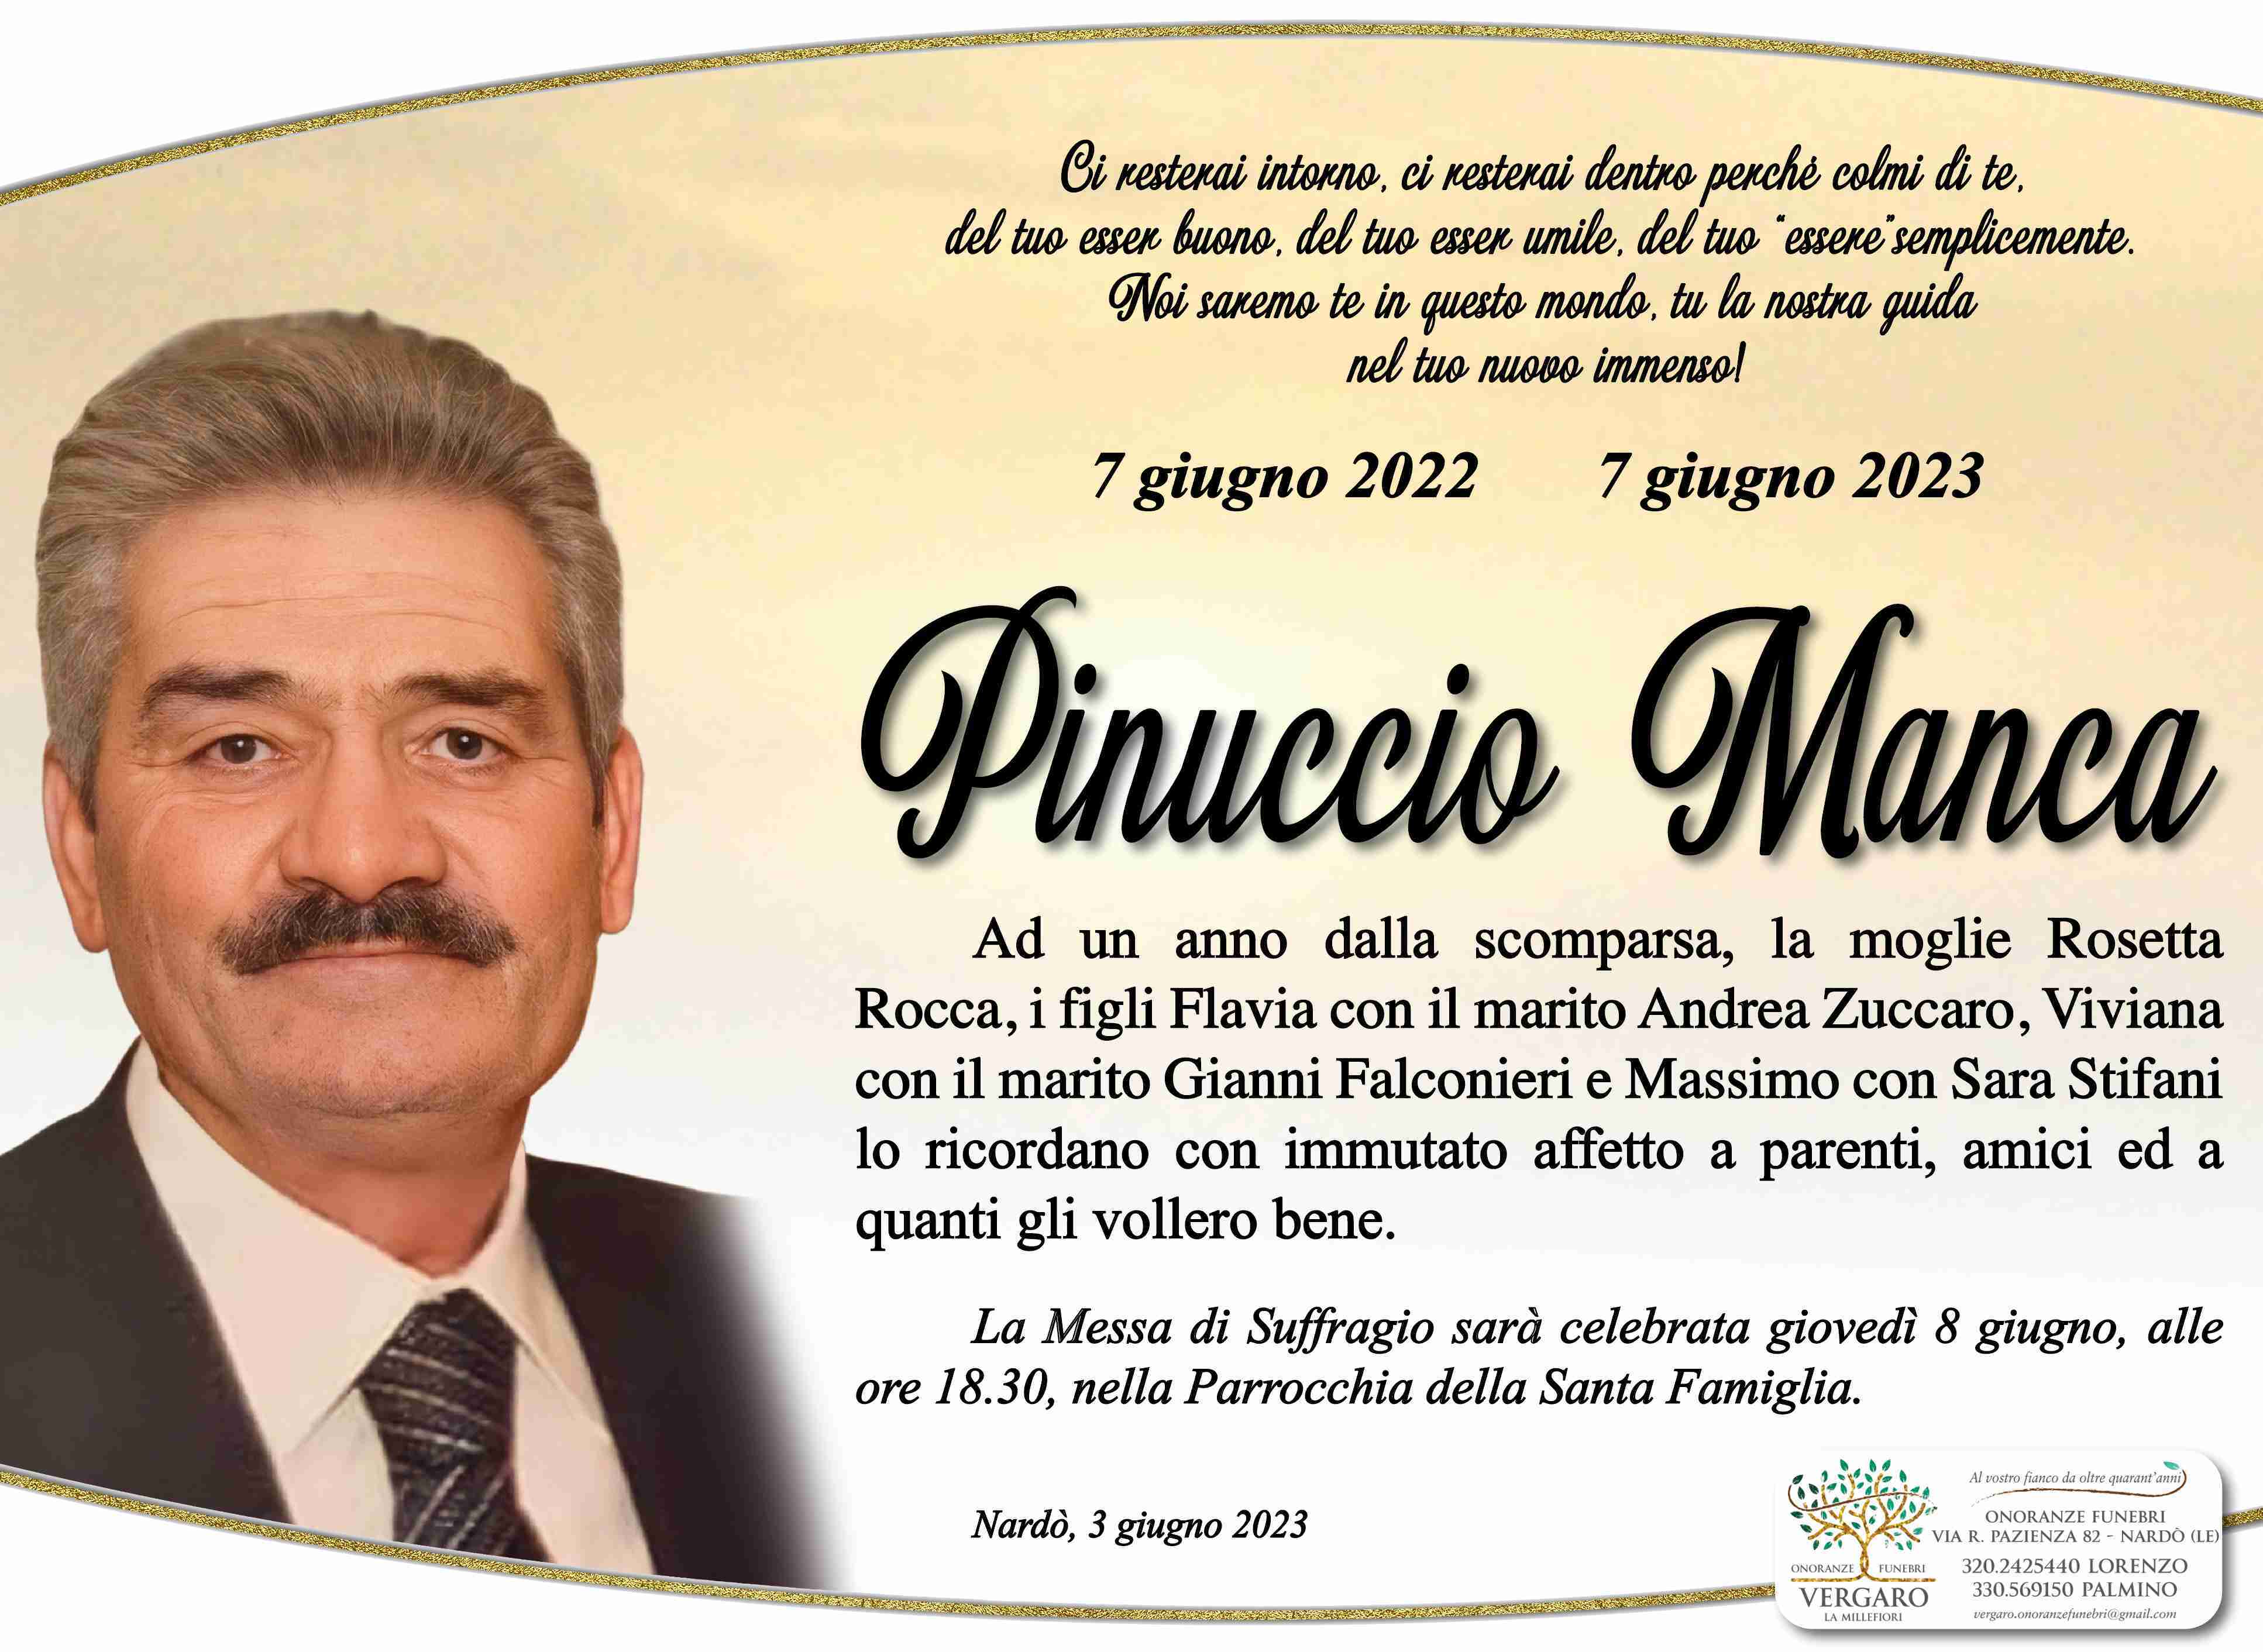 Pinuccio Manca